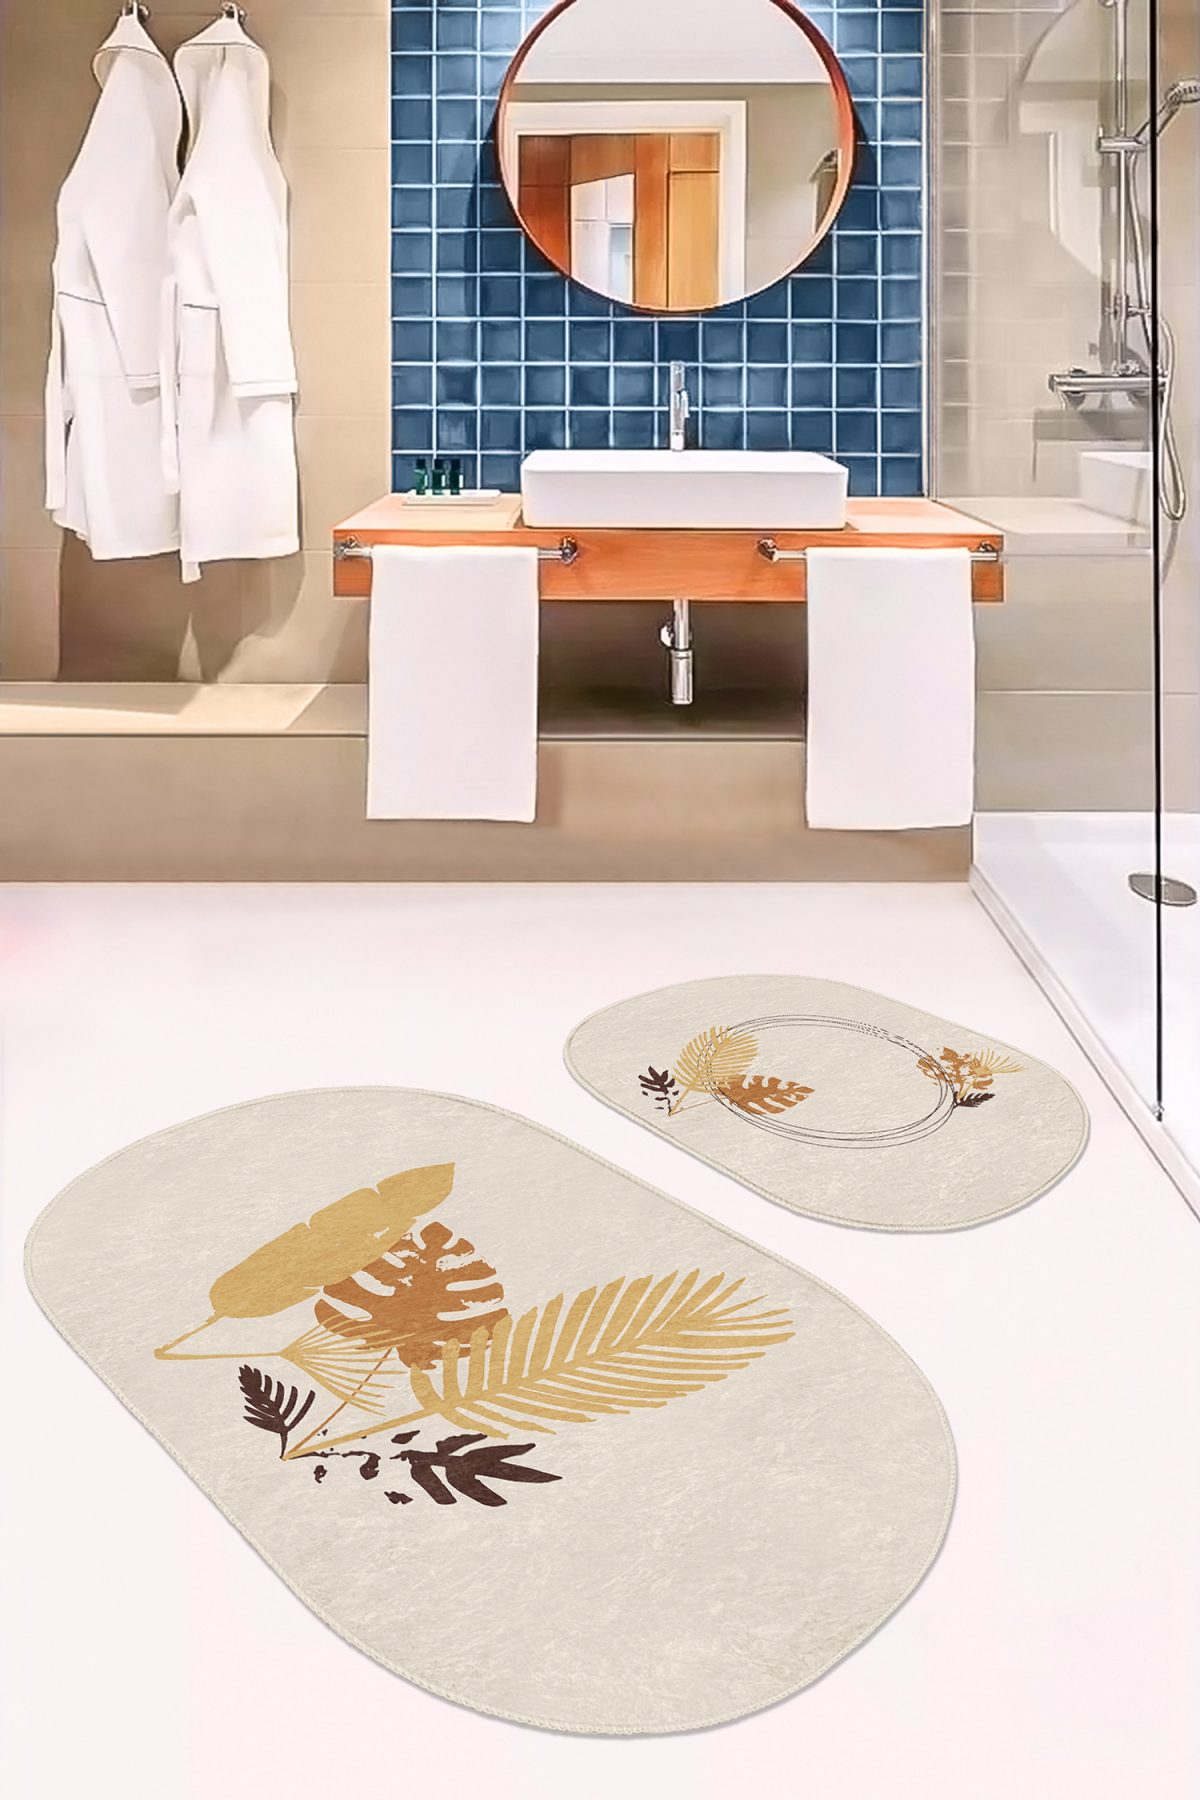 Krem Zemin Tropik Yaprak Tasarımlı 2'li Oval Kaymaz Tabanlı Banyo & Mutfak Paspas Takımı Realhomes